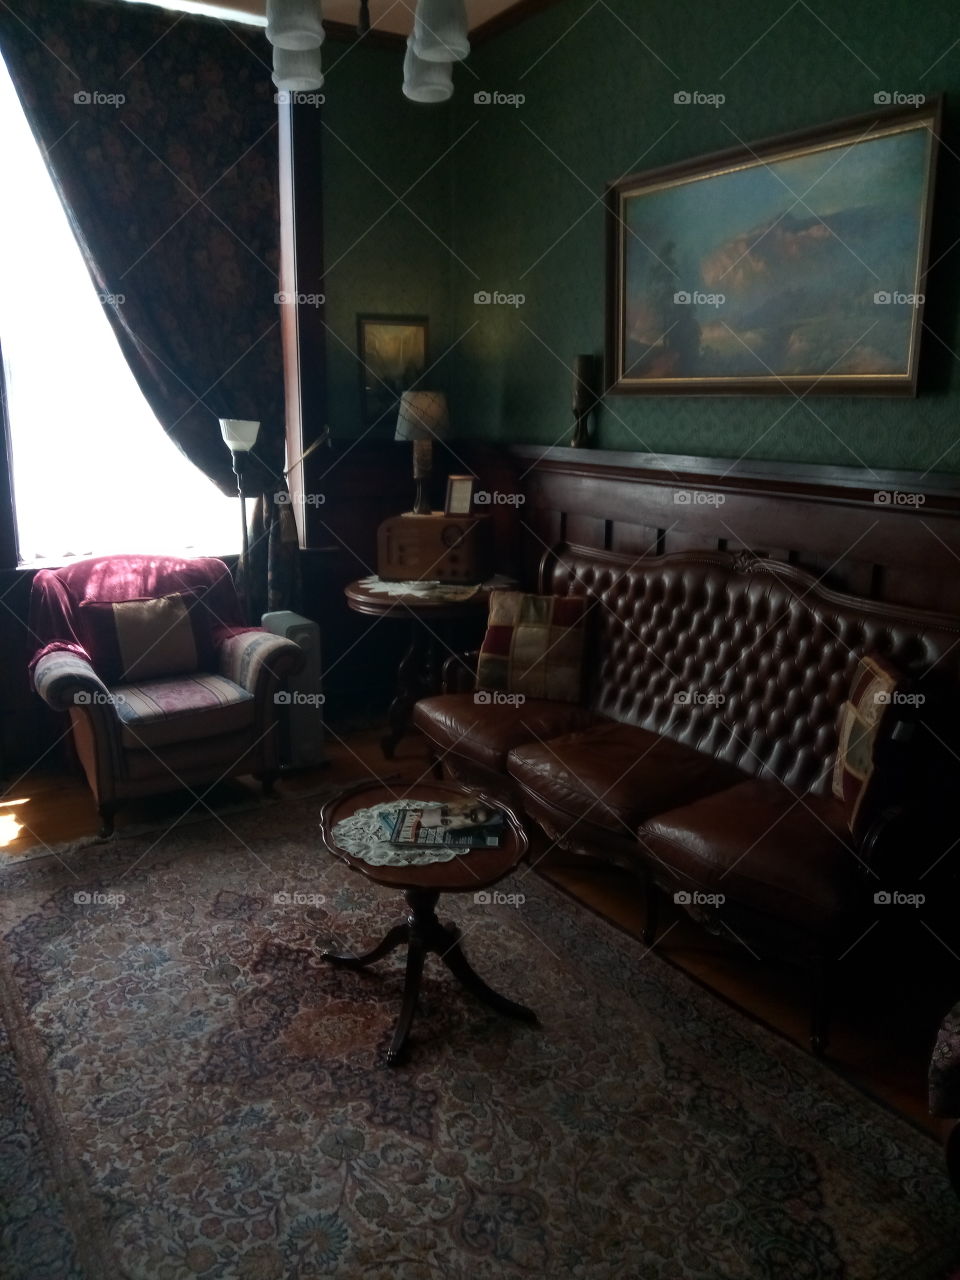 Herbert Hoover Room